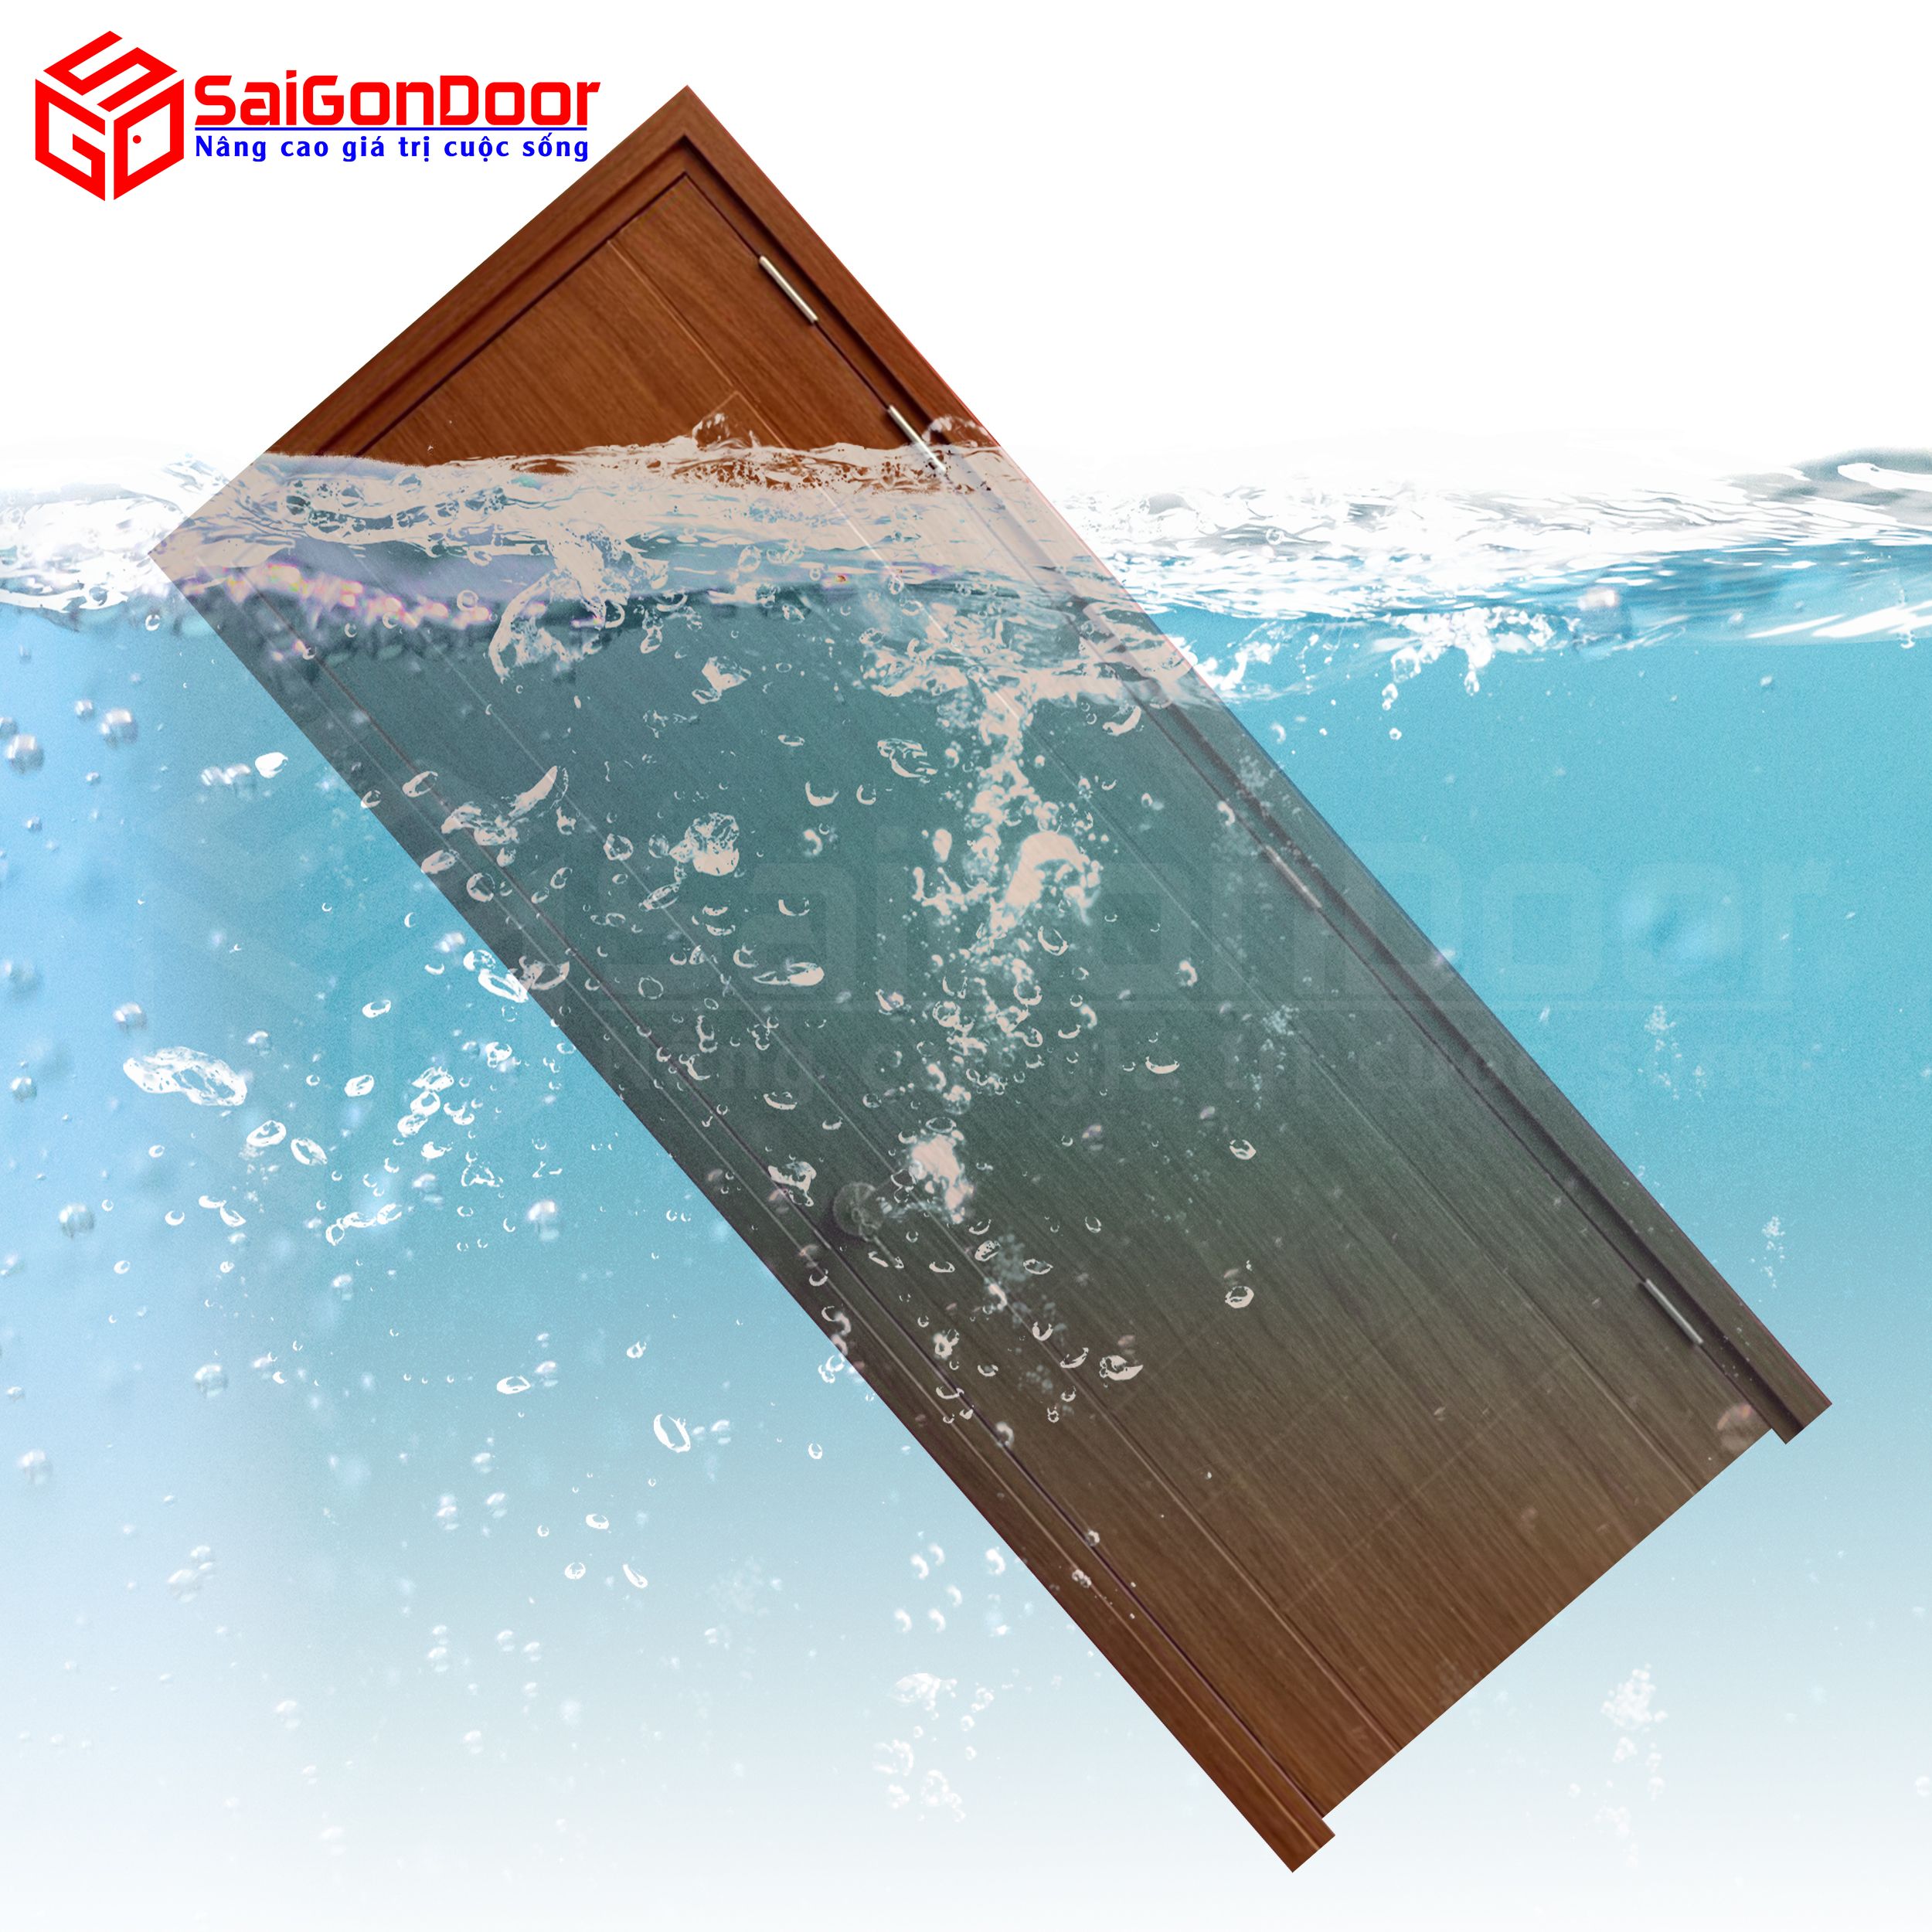 Cửa gỗ nhà tắm Composite cho khả năng chống nước tuyệt đối yên tam khi sử dụng trong nhà tắm